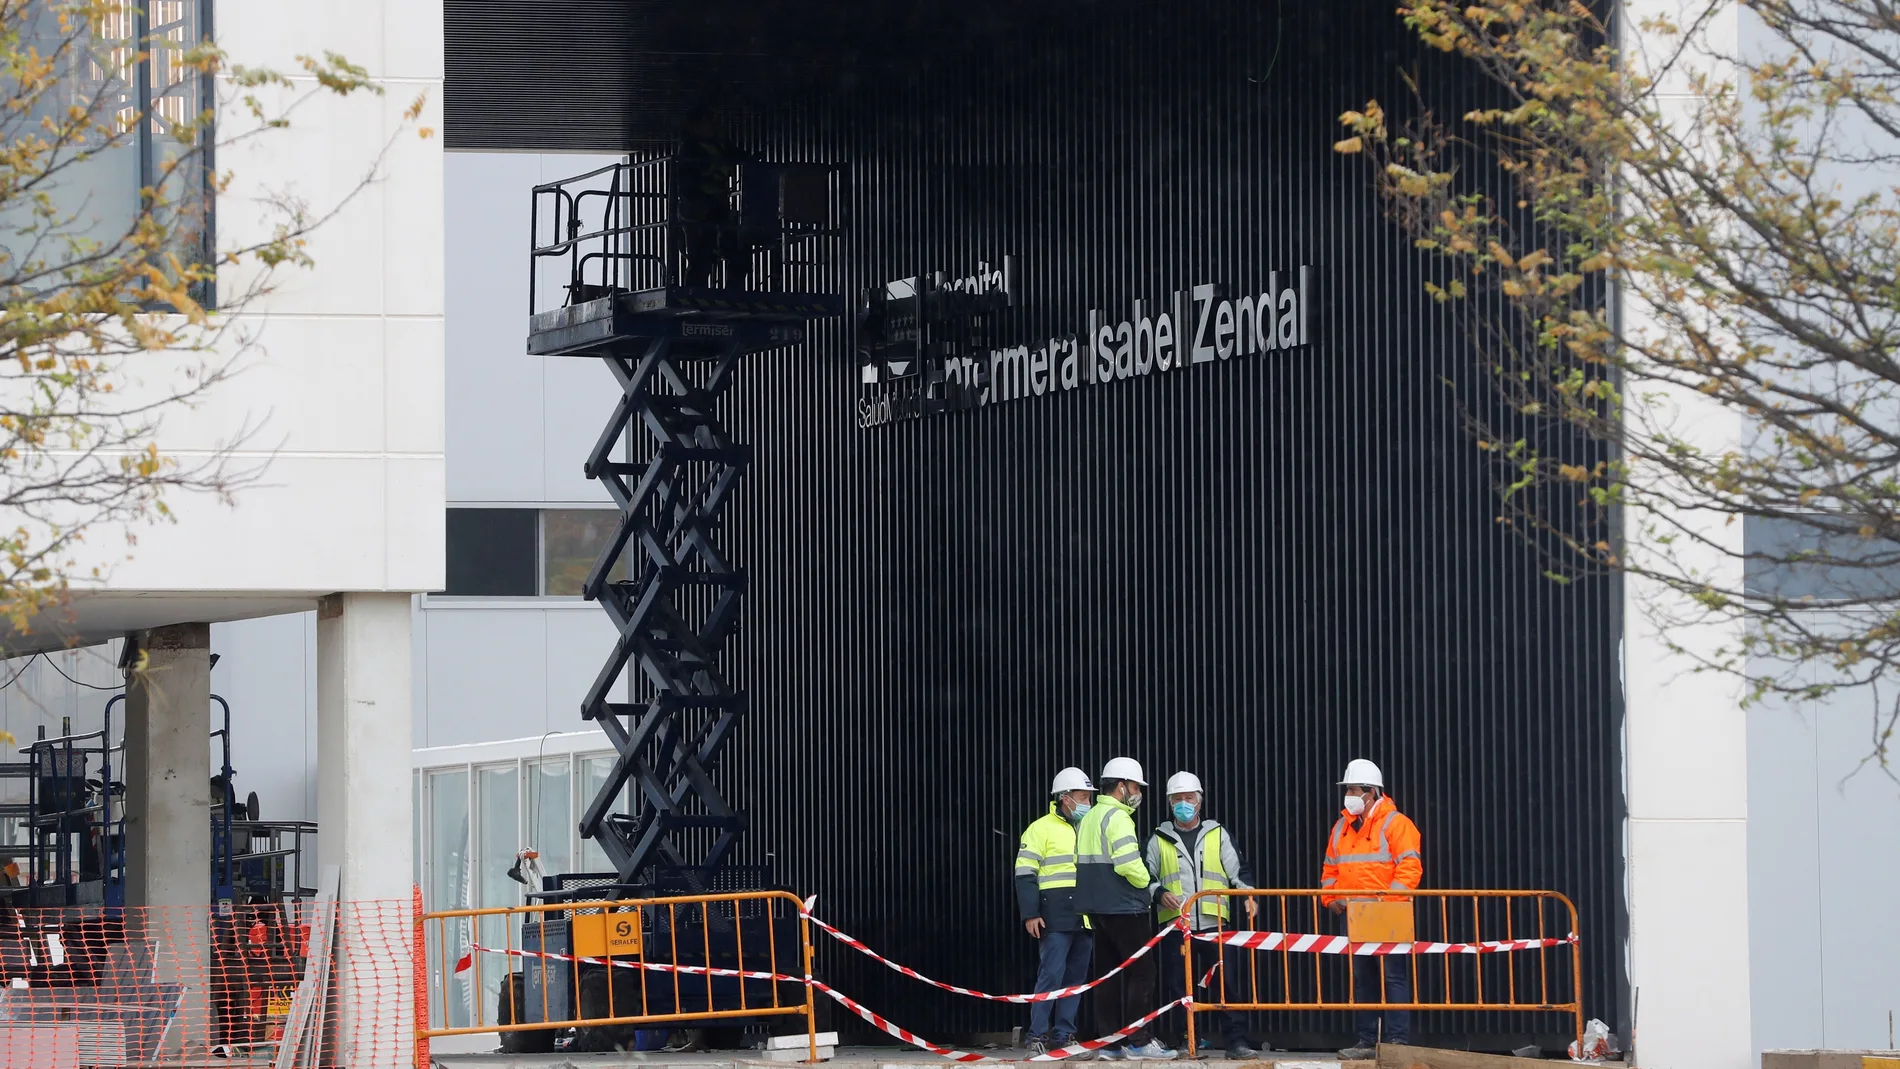 El hospital de pandemias y emergencias de Madrid Isabel Zendal abrirá sus puertas en dos o tres semanas